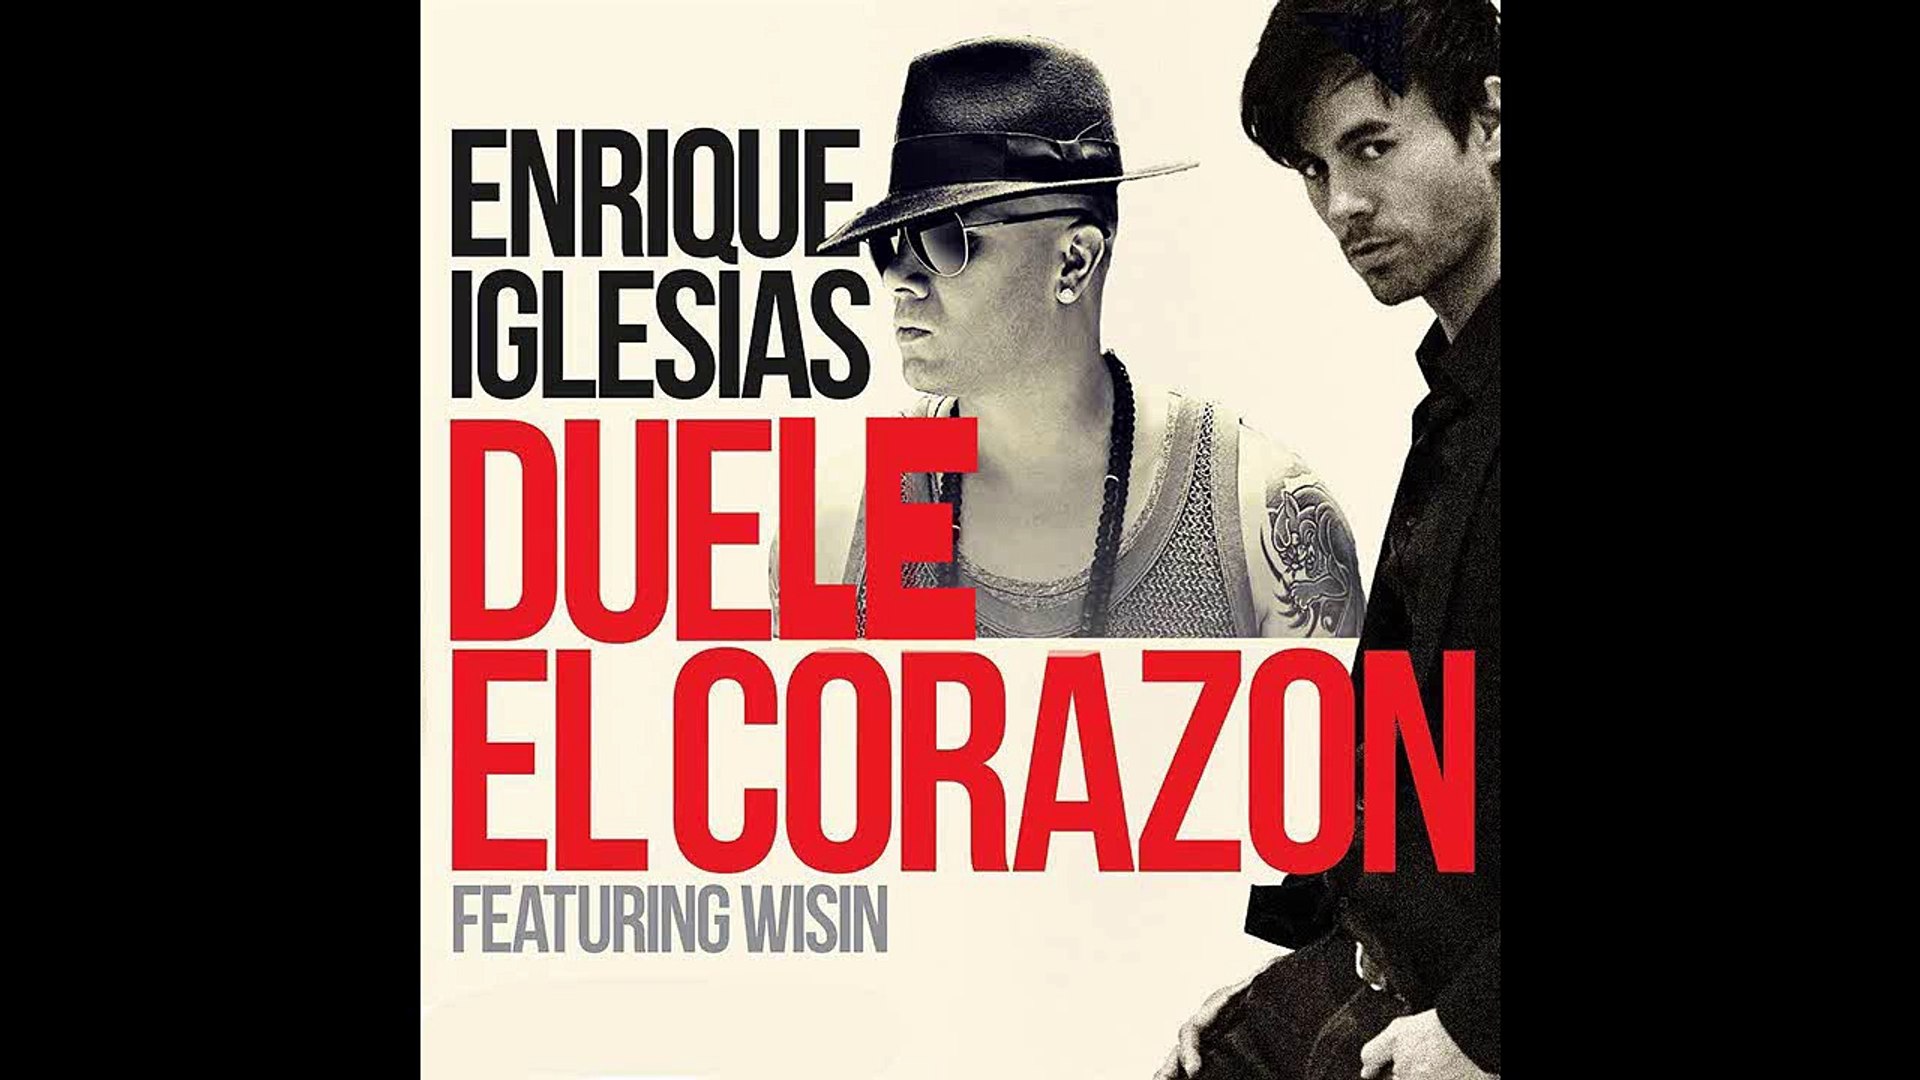 Enrique Iglesias - DUELE EL CORAZON ft. Wisin - Vídeo Dailymotion